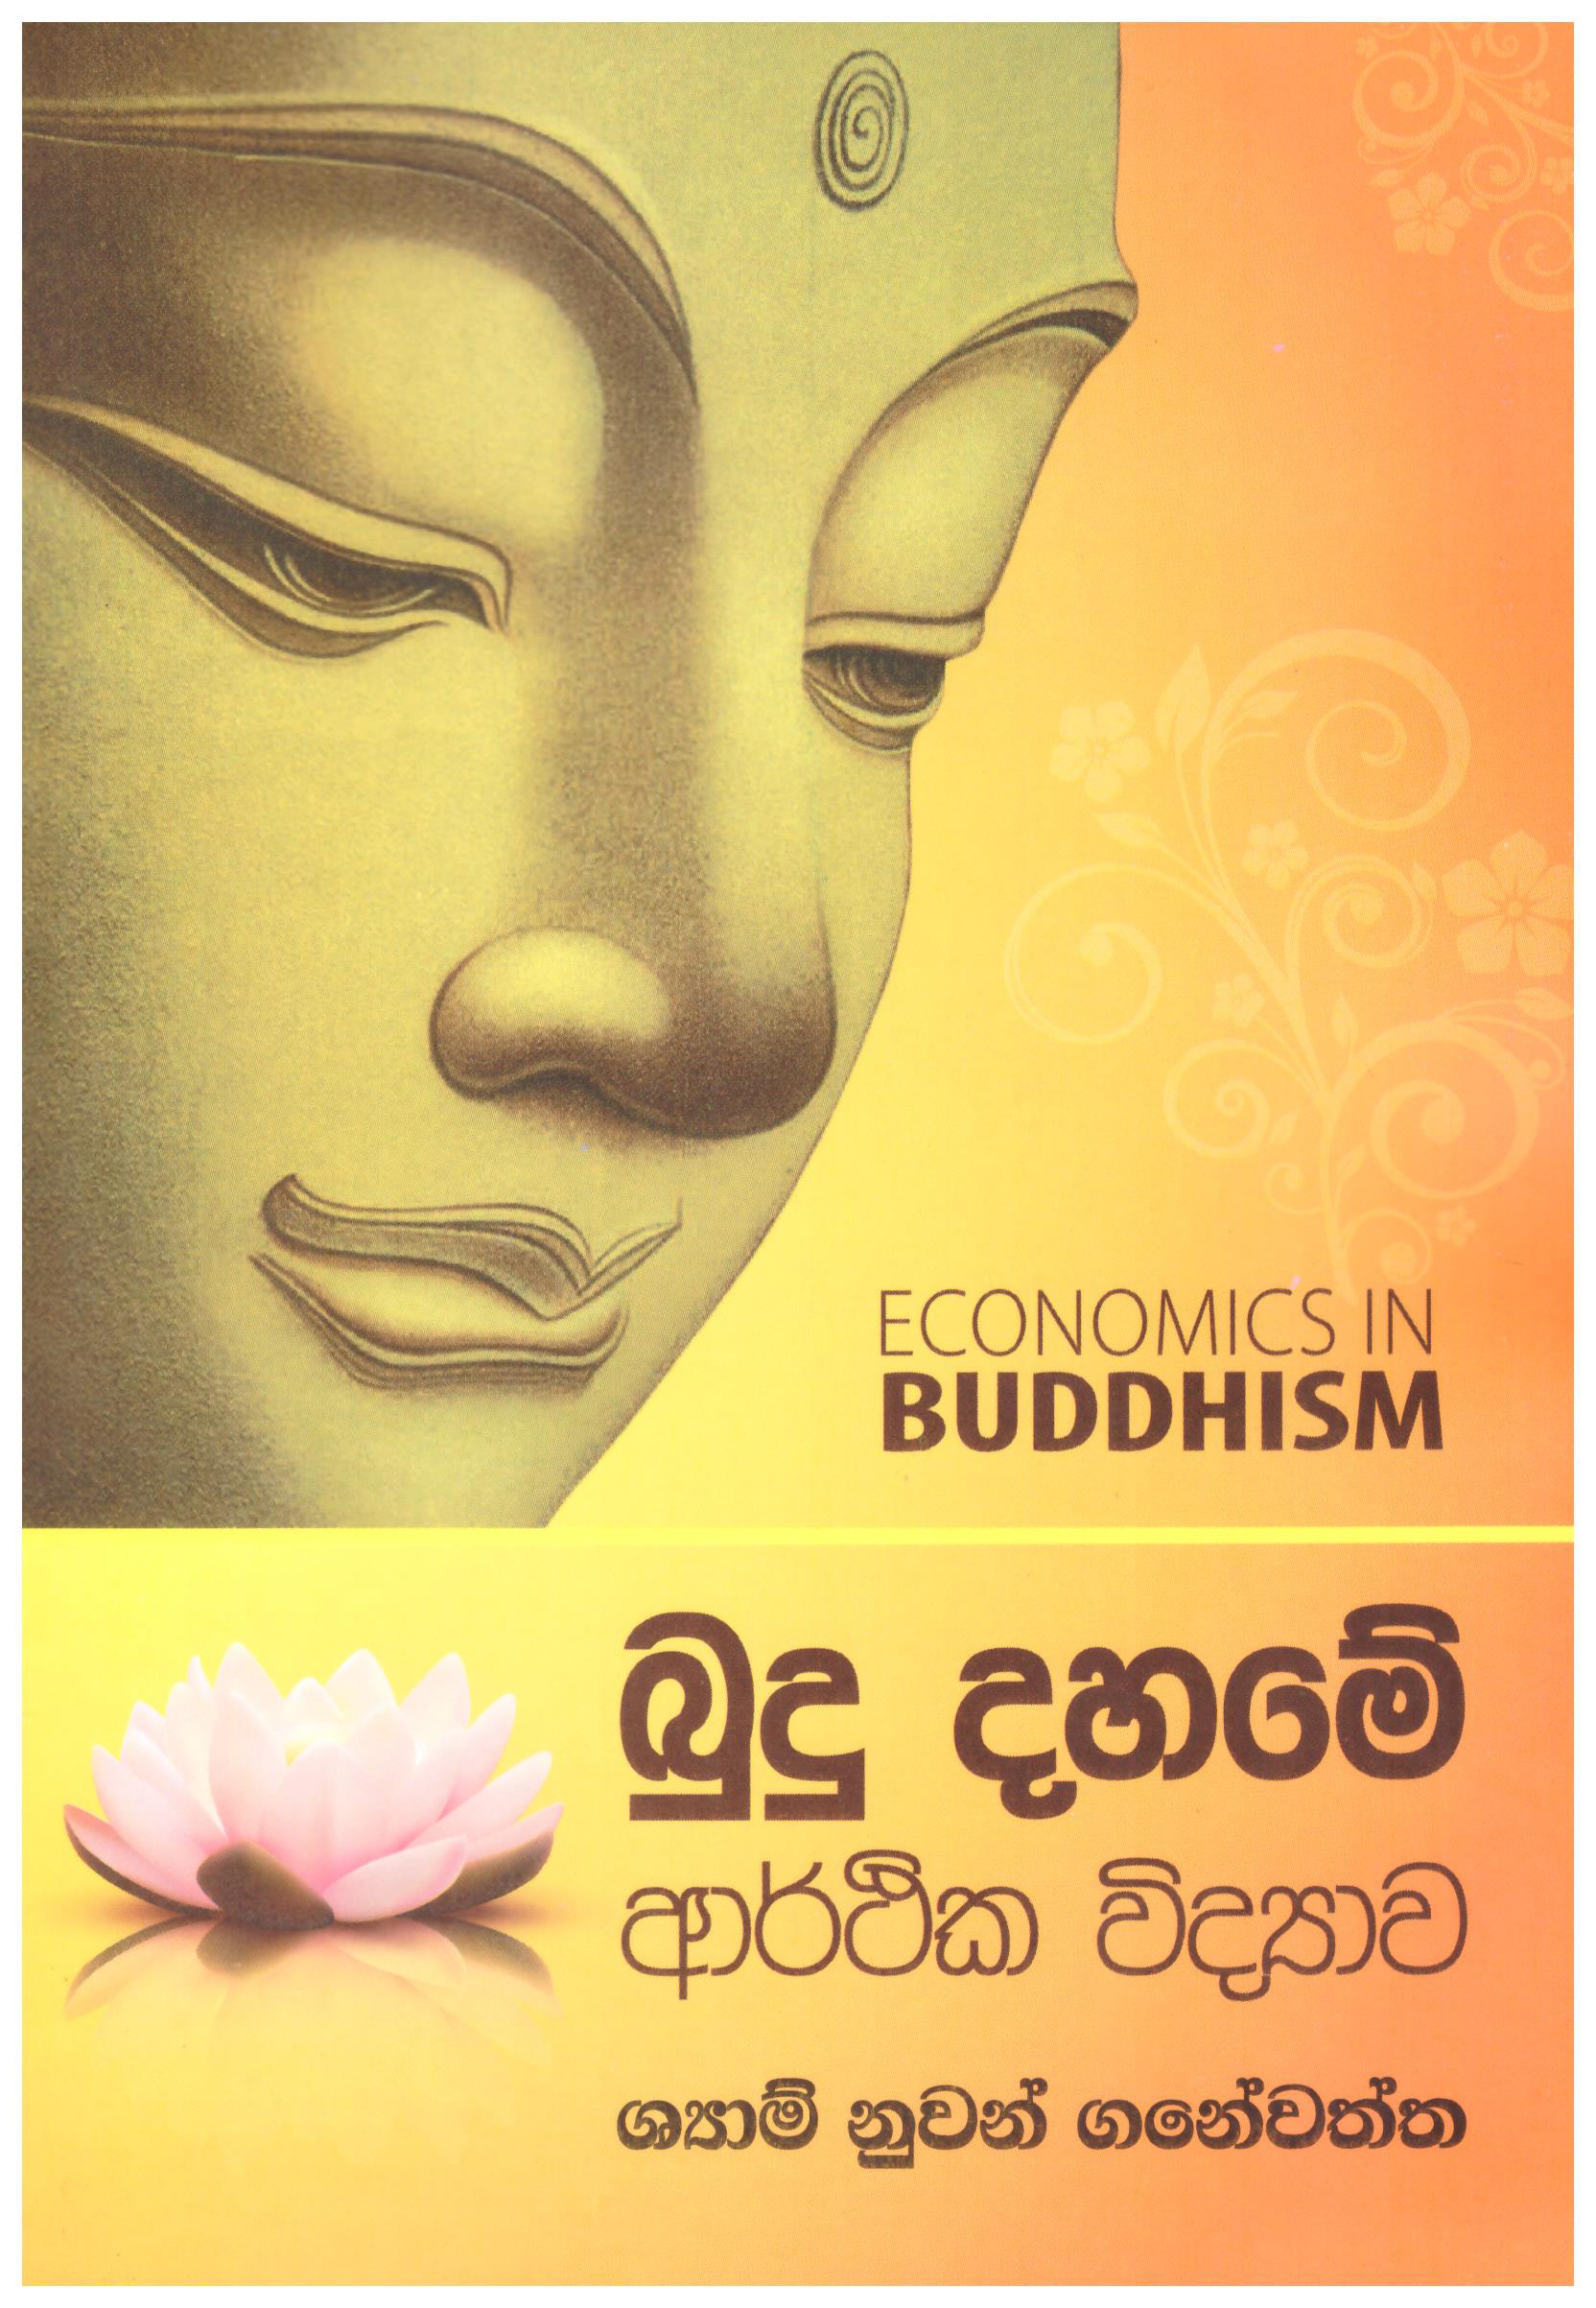 Budu Dhame Arthika Vidyawa